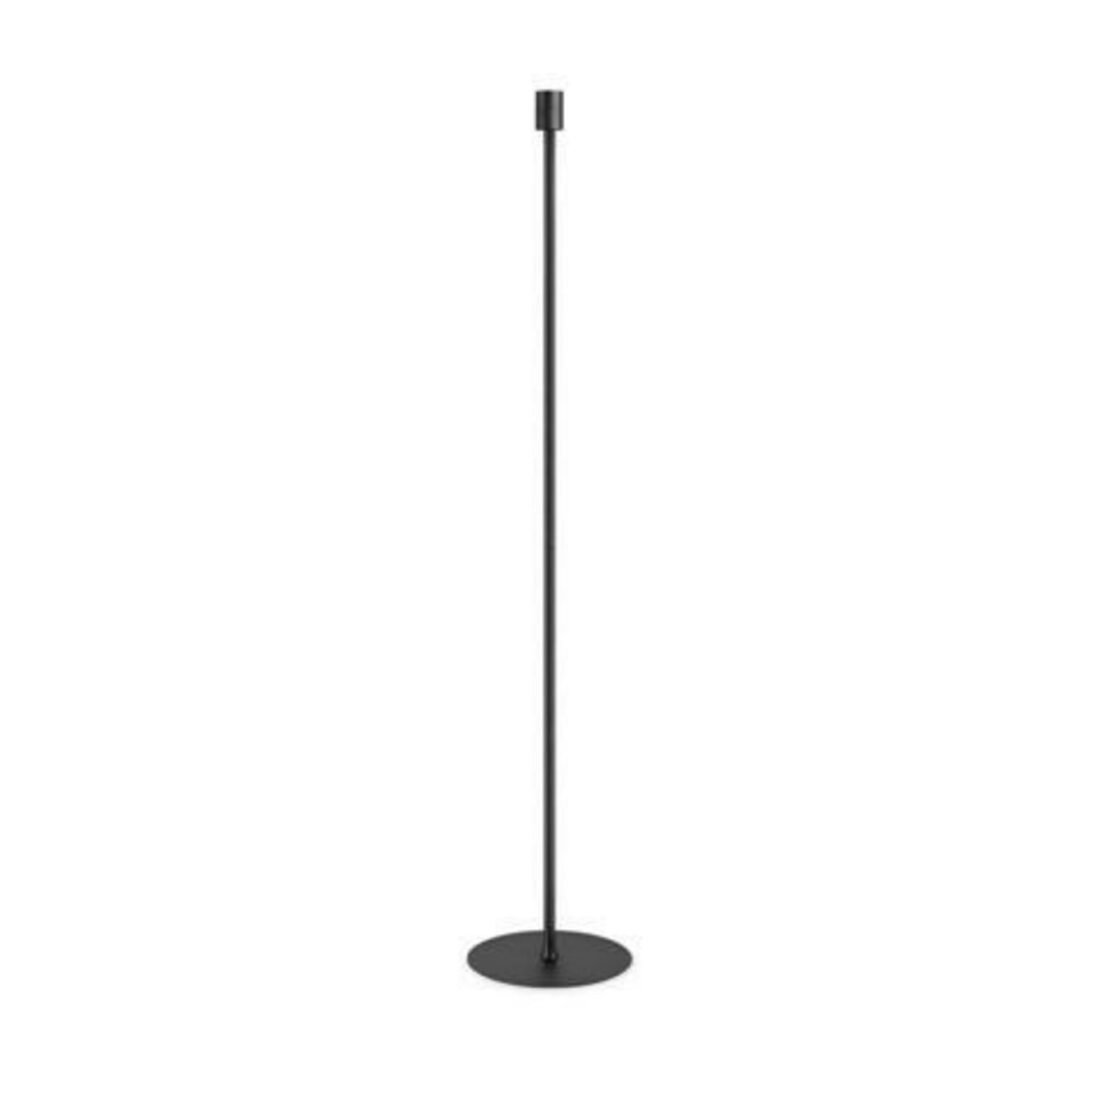 Stojací lampa Ideal Lux SET UP MPT NERO 259970 E27 1x60W IP20 28cm černá